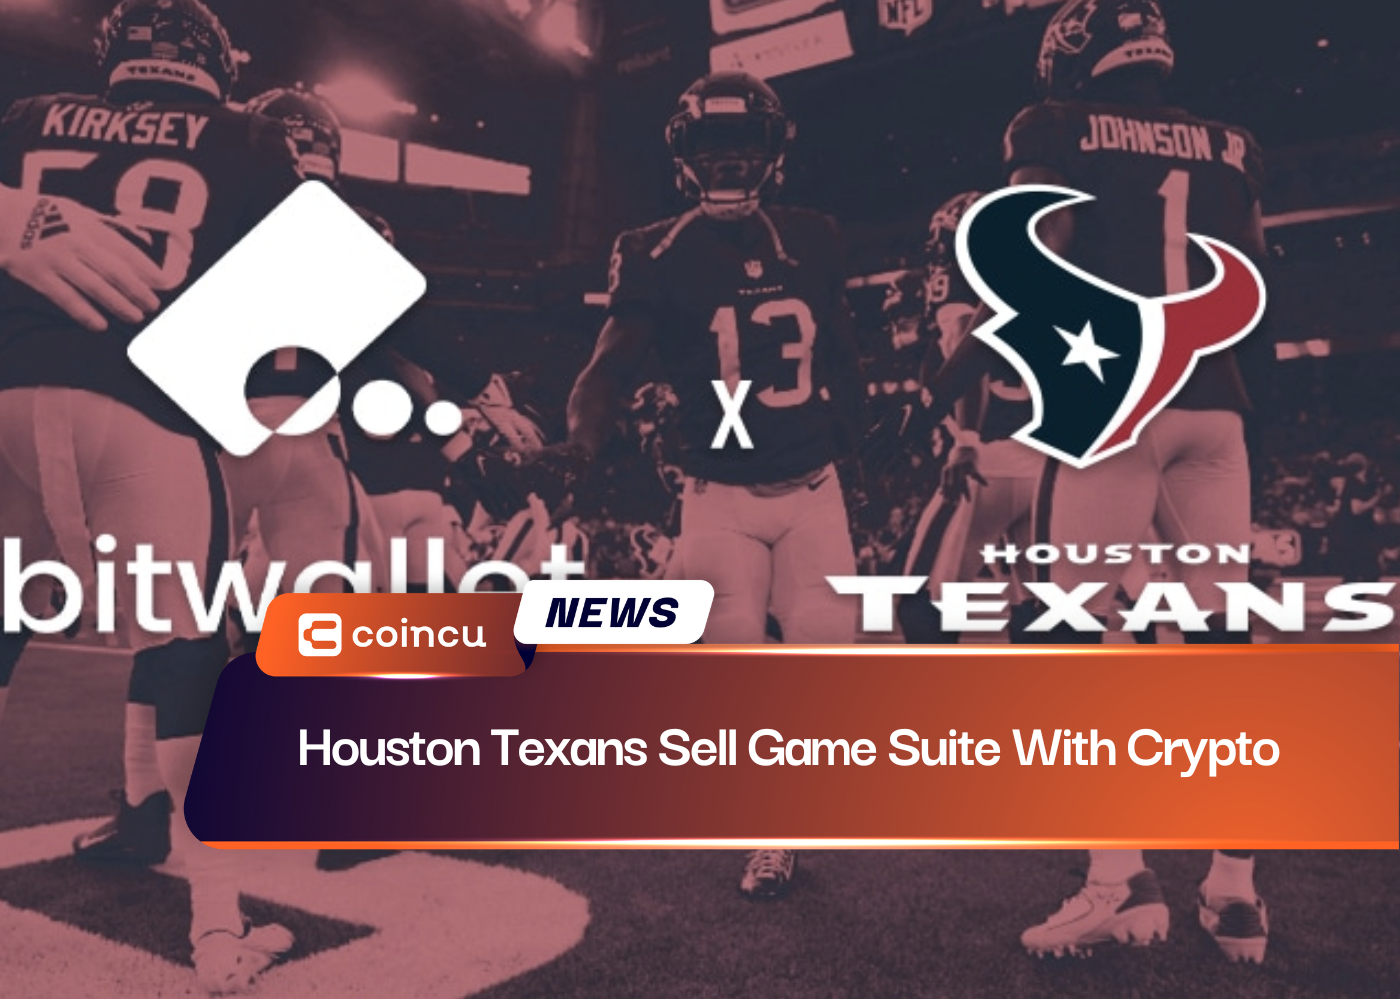 Les Texans de Houston vendent une suite de jeux avec de la crypto